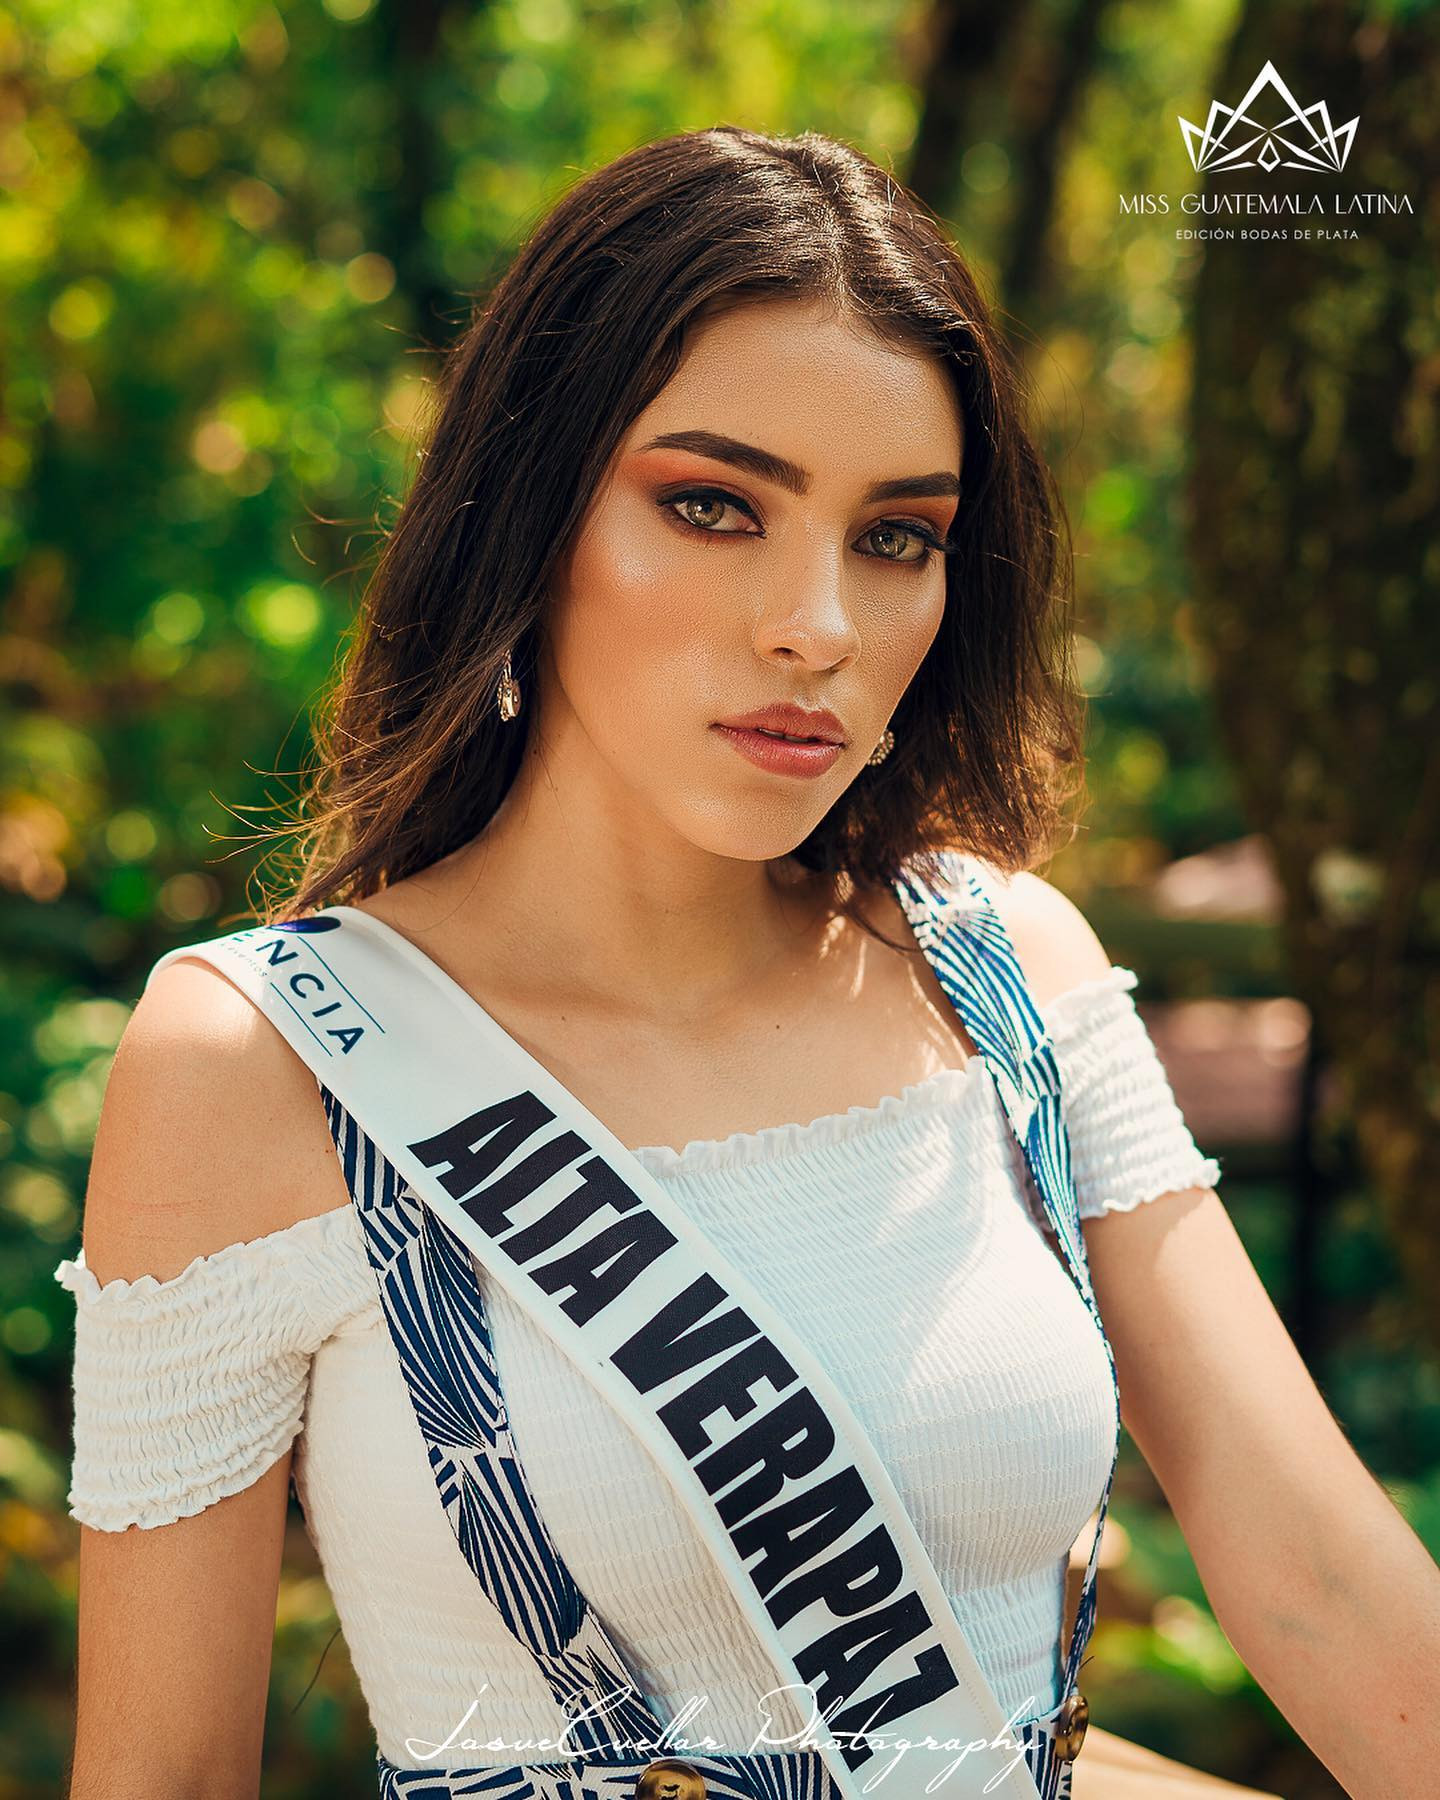 Latina - candidatas a miss guatemala latina 2021. final: 30 de abril. - Página 6 BFh5YX